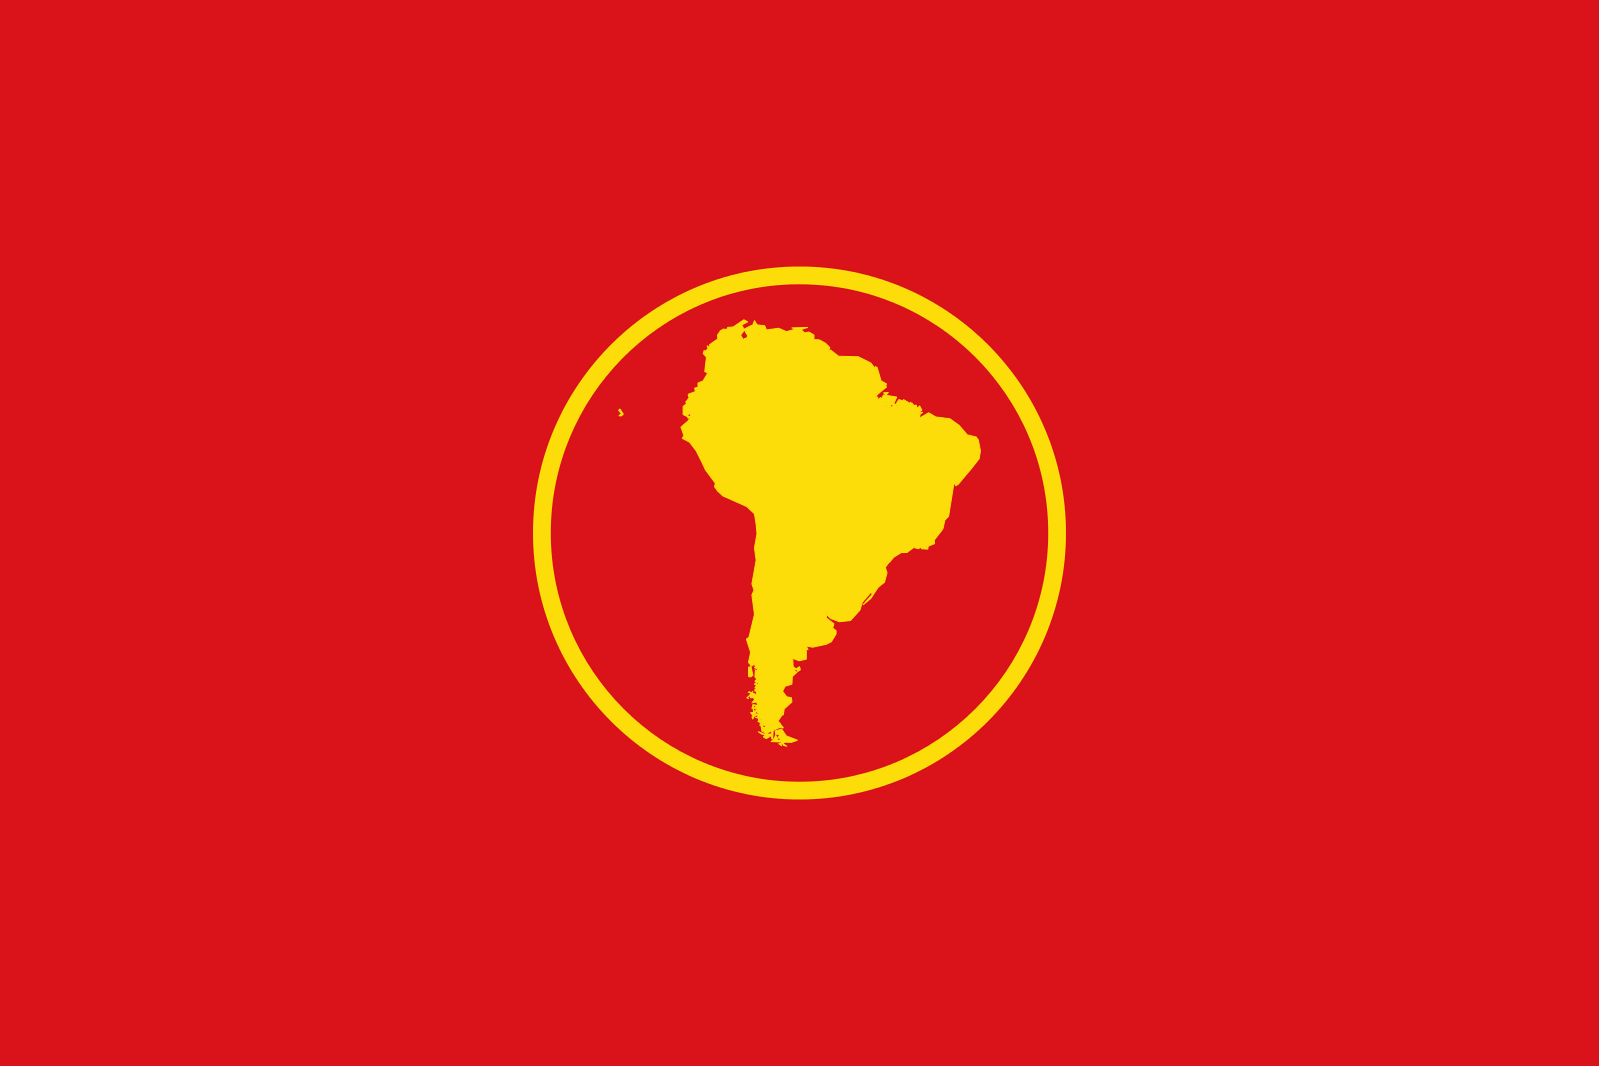 दक्षिण अमेरिका का झंडा